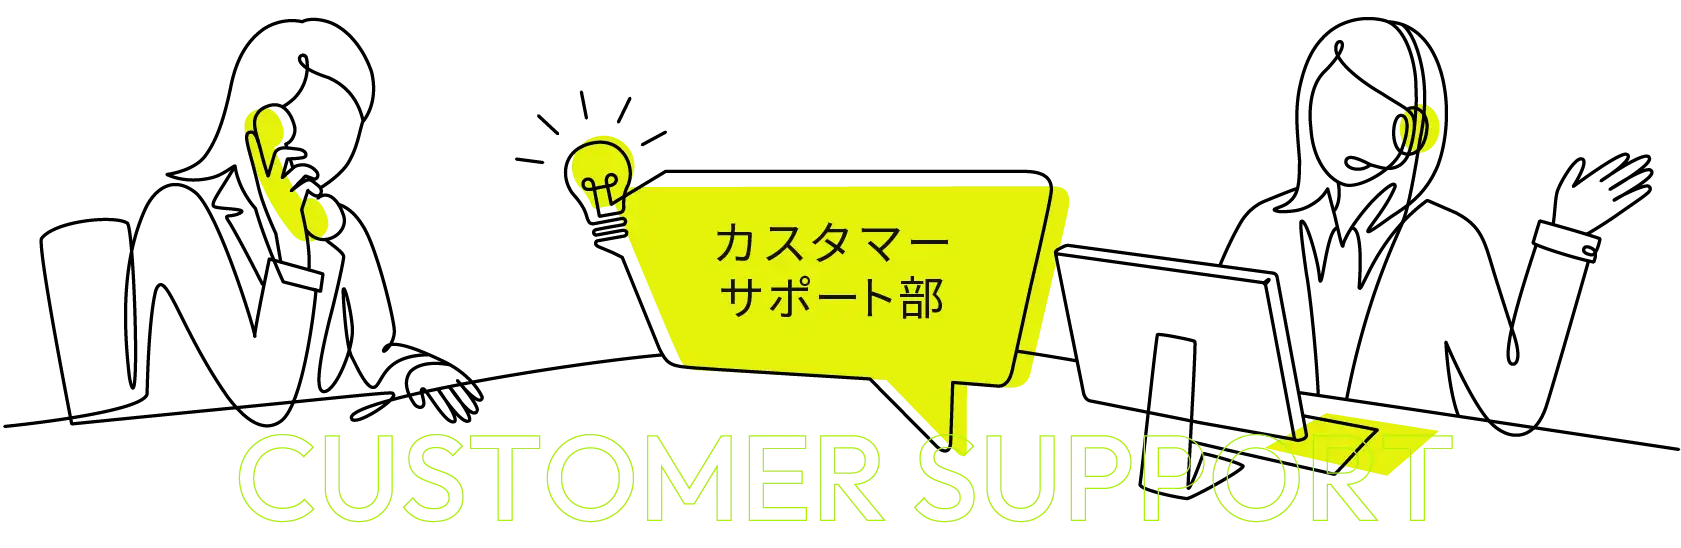 カスタマーサポート部 - CUSTOMER SUPPORT